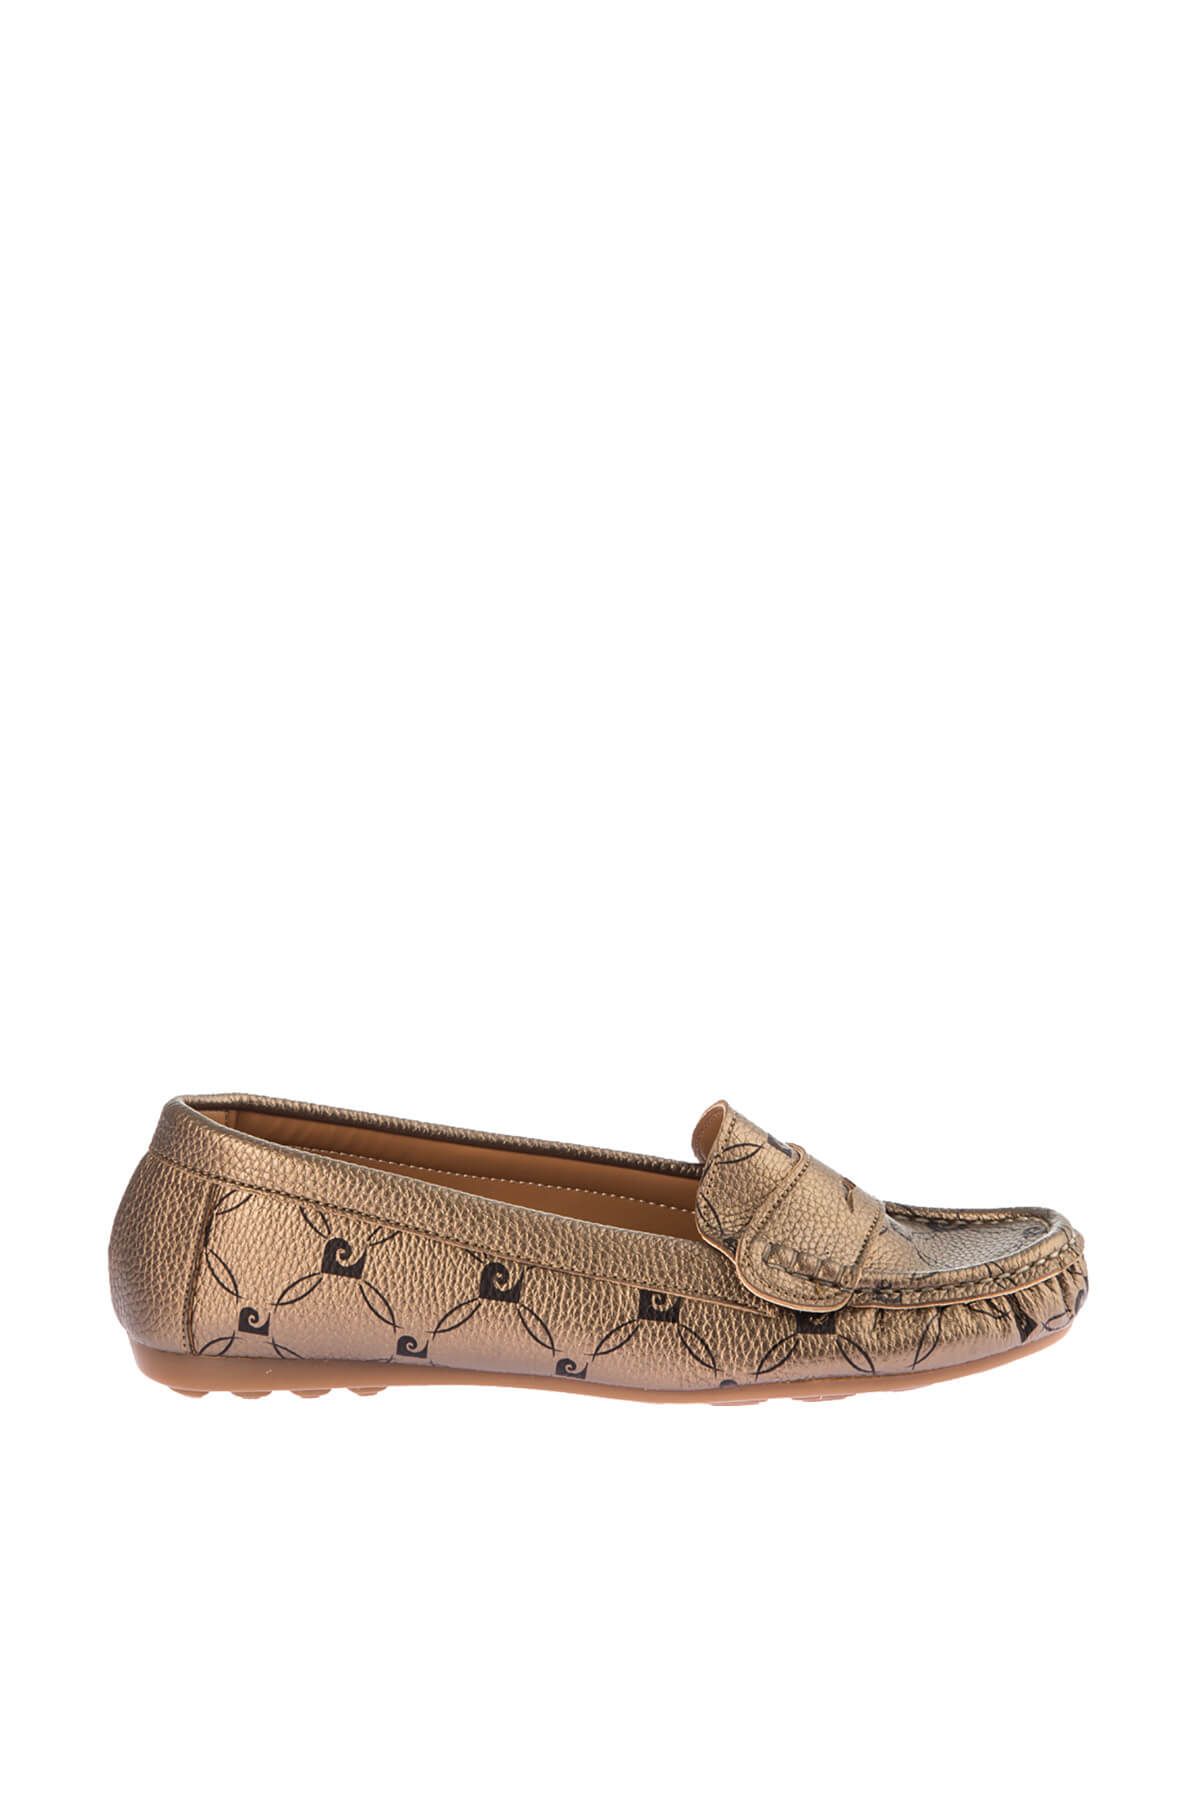 Pierre Cardin Bronz Kadın Loafer Ayakkabı DSMAW19611